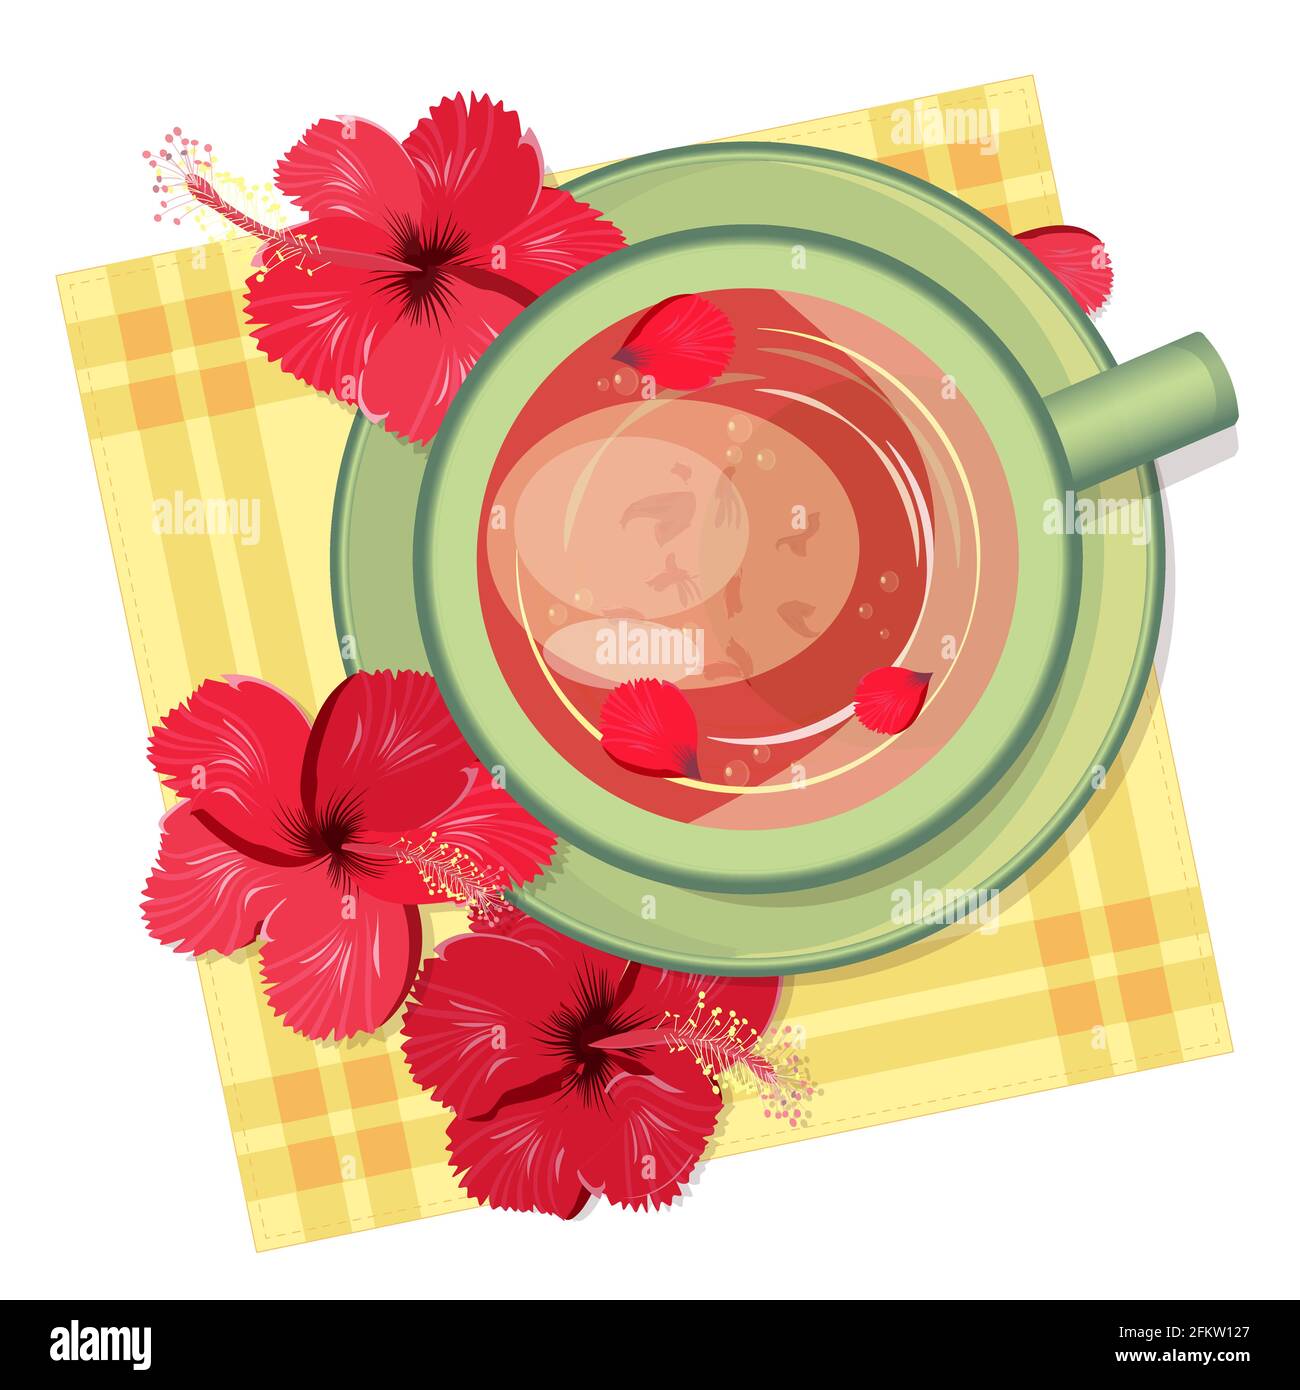 Karkade-Tee in einem grünen Tonbecher, Hibiskusblüten auf einer leuchtend gelben Serviette, Landhausstil, Draufsicht. Kräutergetränk. Vektorgrafik flach. Stock Vektor